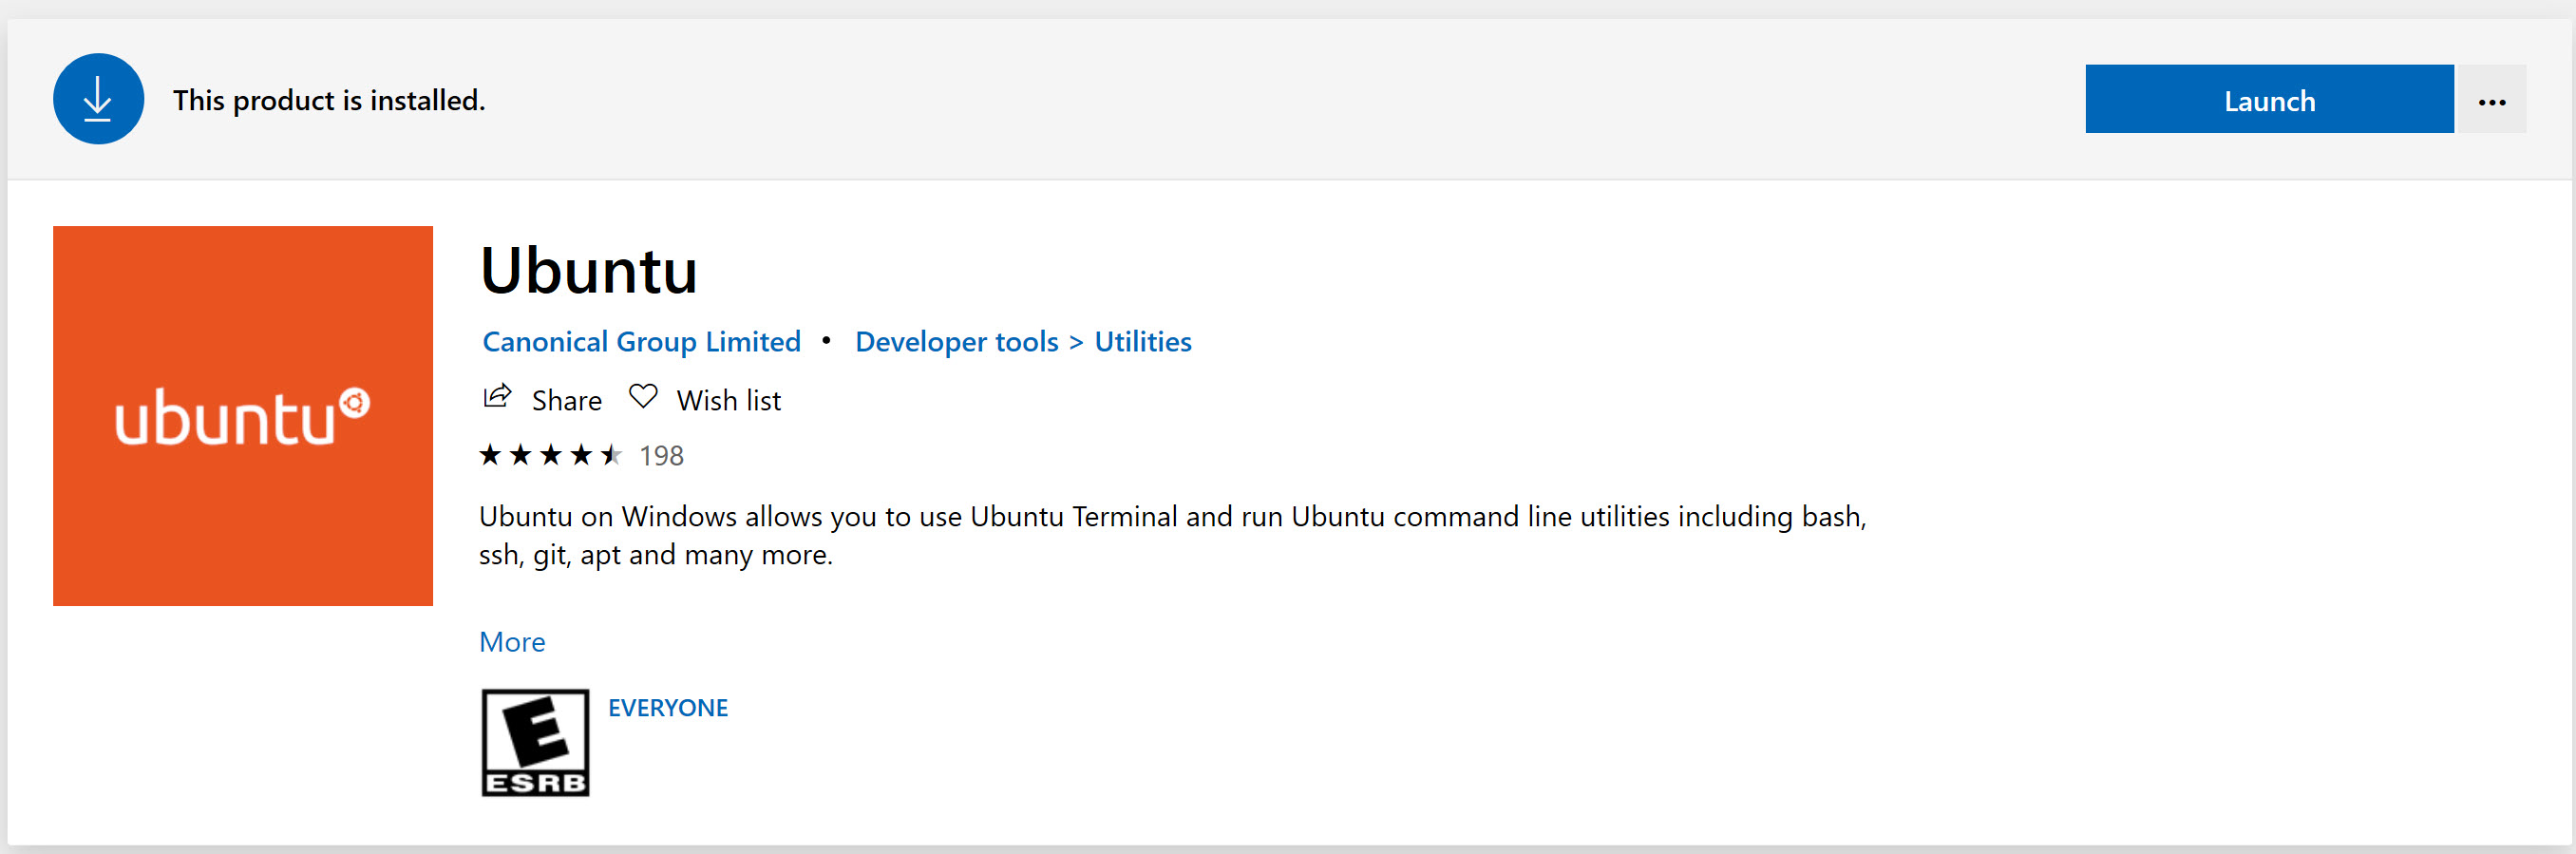 Launch Ubuntu